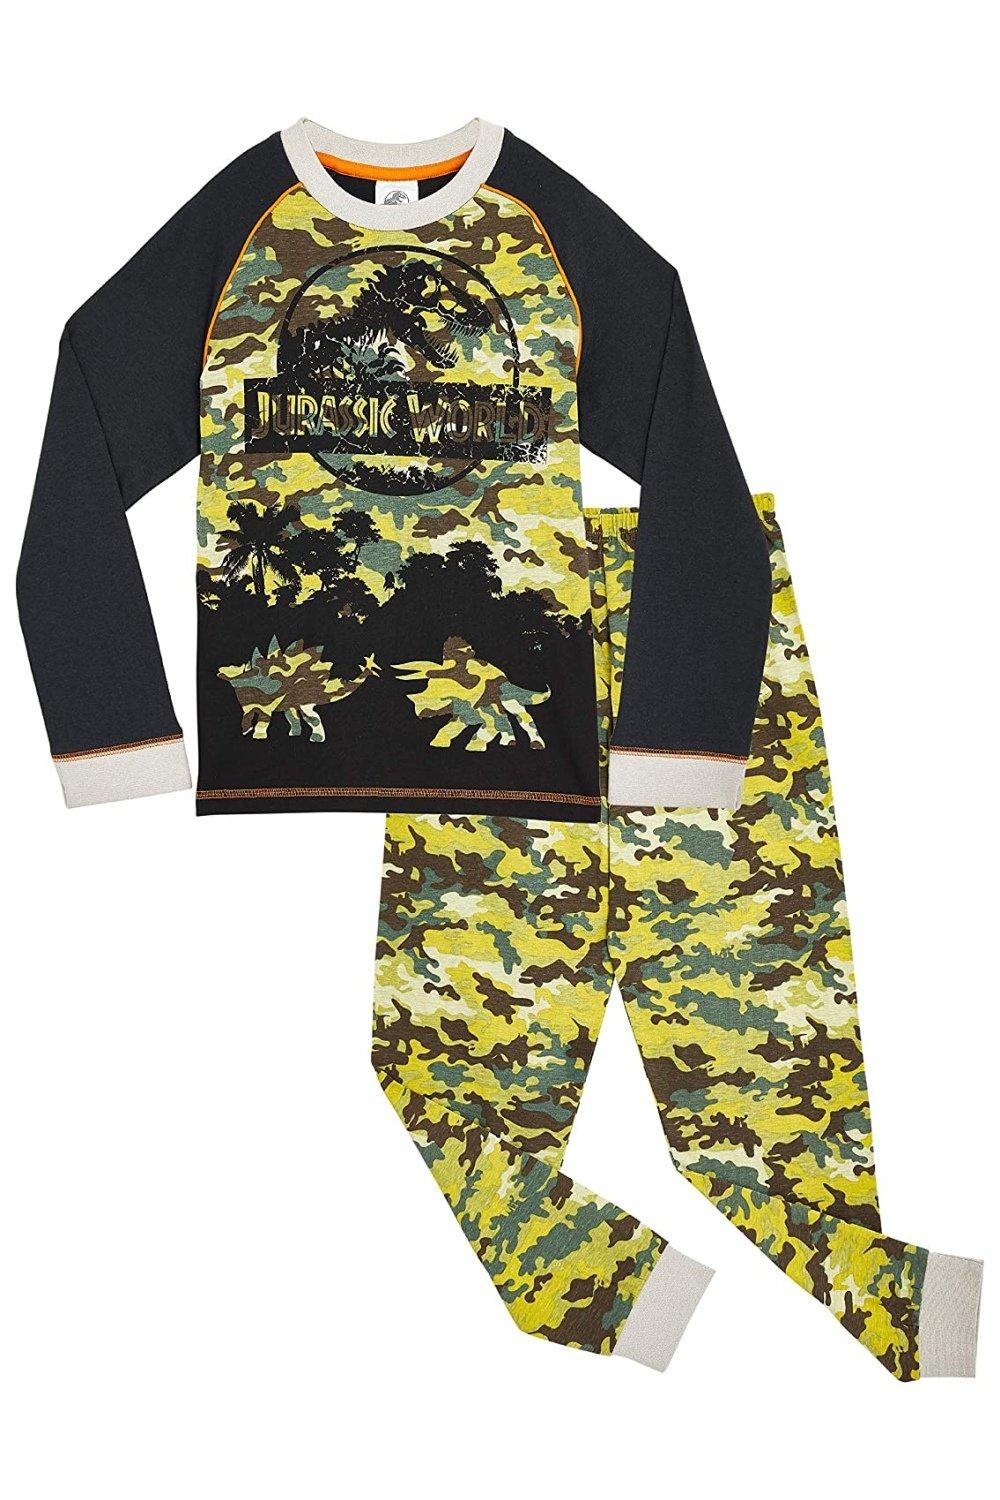 Пижамный комплект Jurassic World, мультиколор зимняя пижама из 100% хлопка для мужчин dormir пижама для отдыха серая пижама домашняя одежда мужские пижамы из хлопка пижамный комплект для с